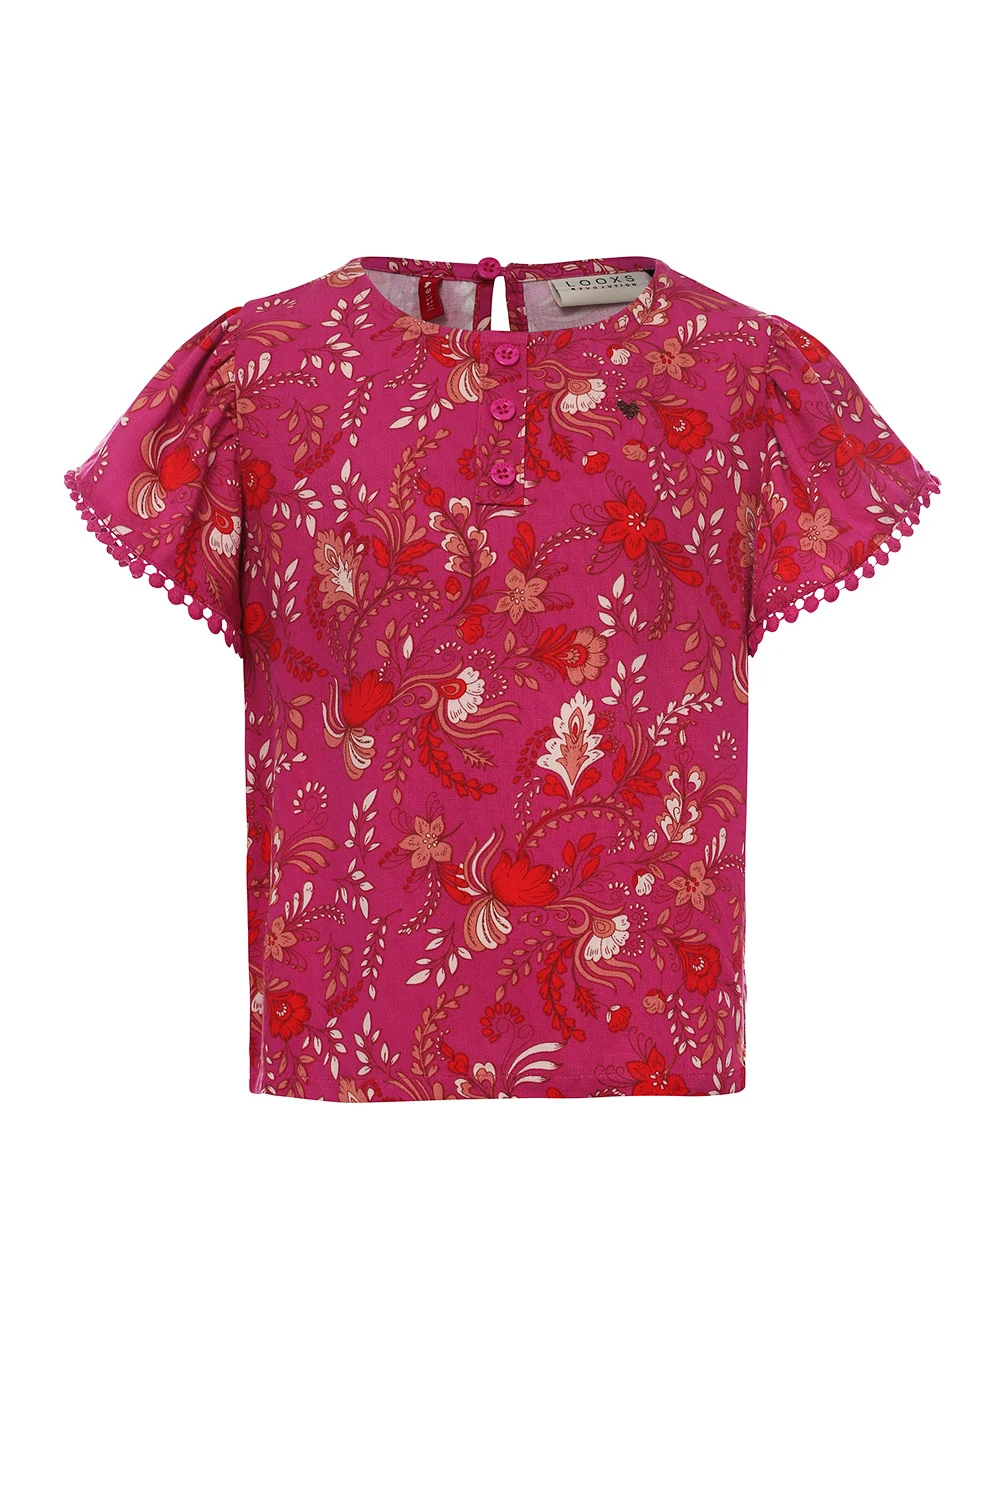 Afbeelding van Looxs Revolution Viscose blouse fuchsia floral voor meisjes in de kleur